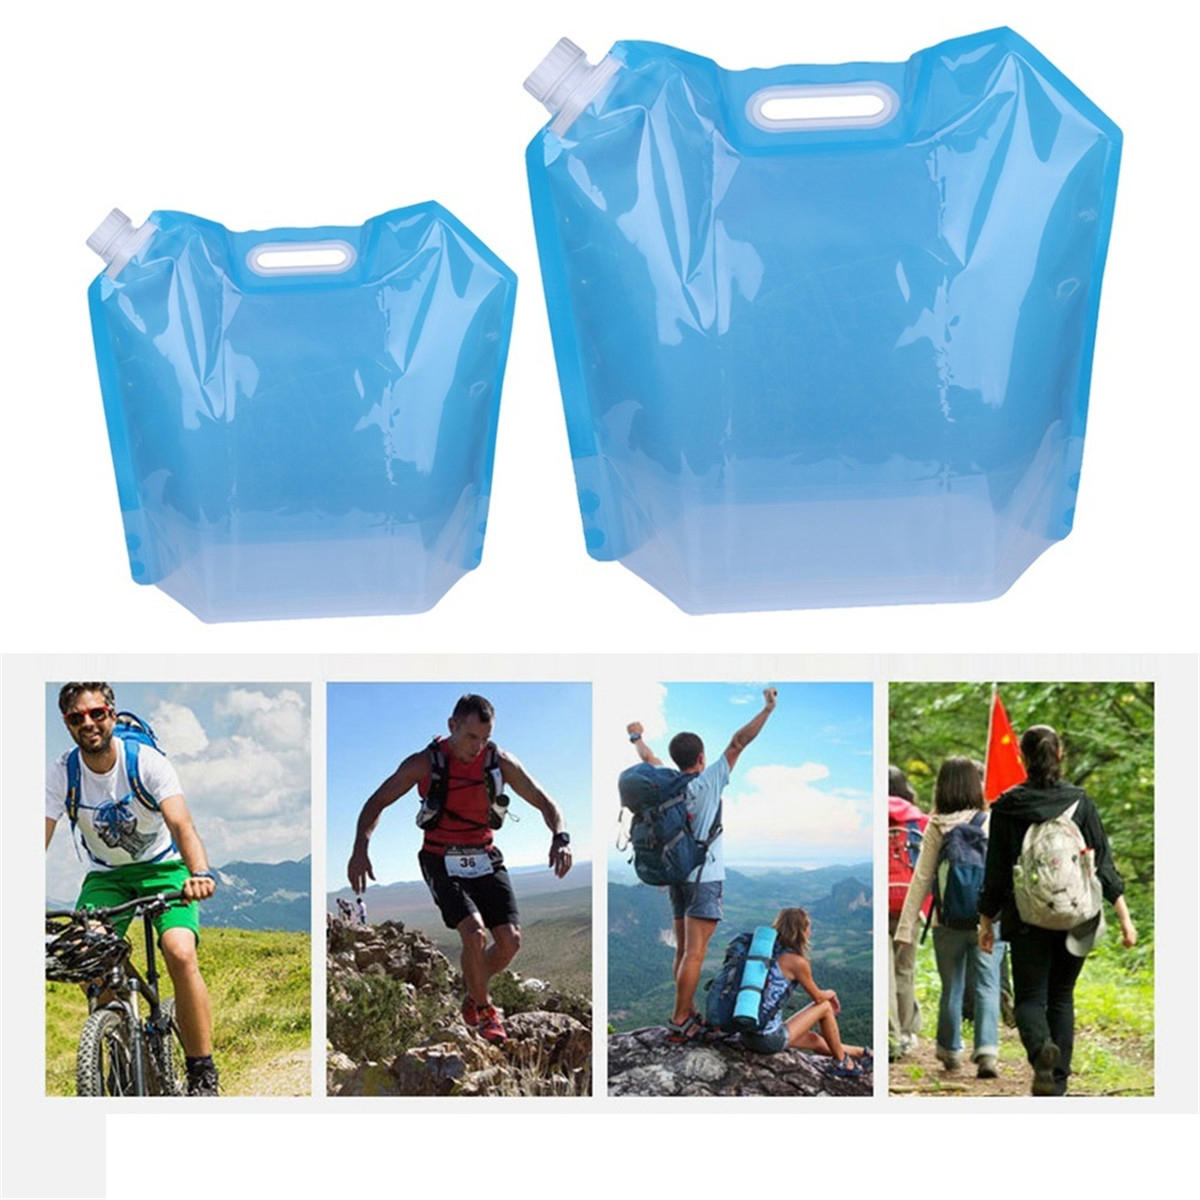 Összecsukható, környezetbarát PVC víztároló táska 5/10 liter kapacitással kültéri tevékenységekhez és utazásokhoz